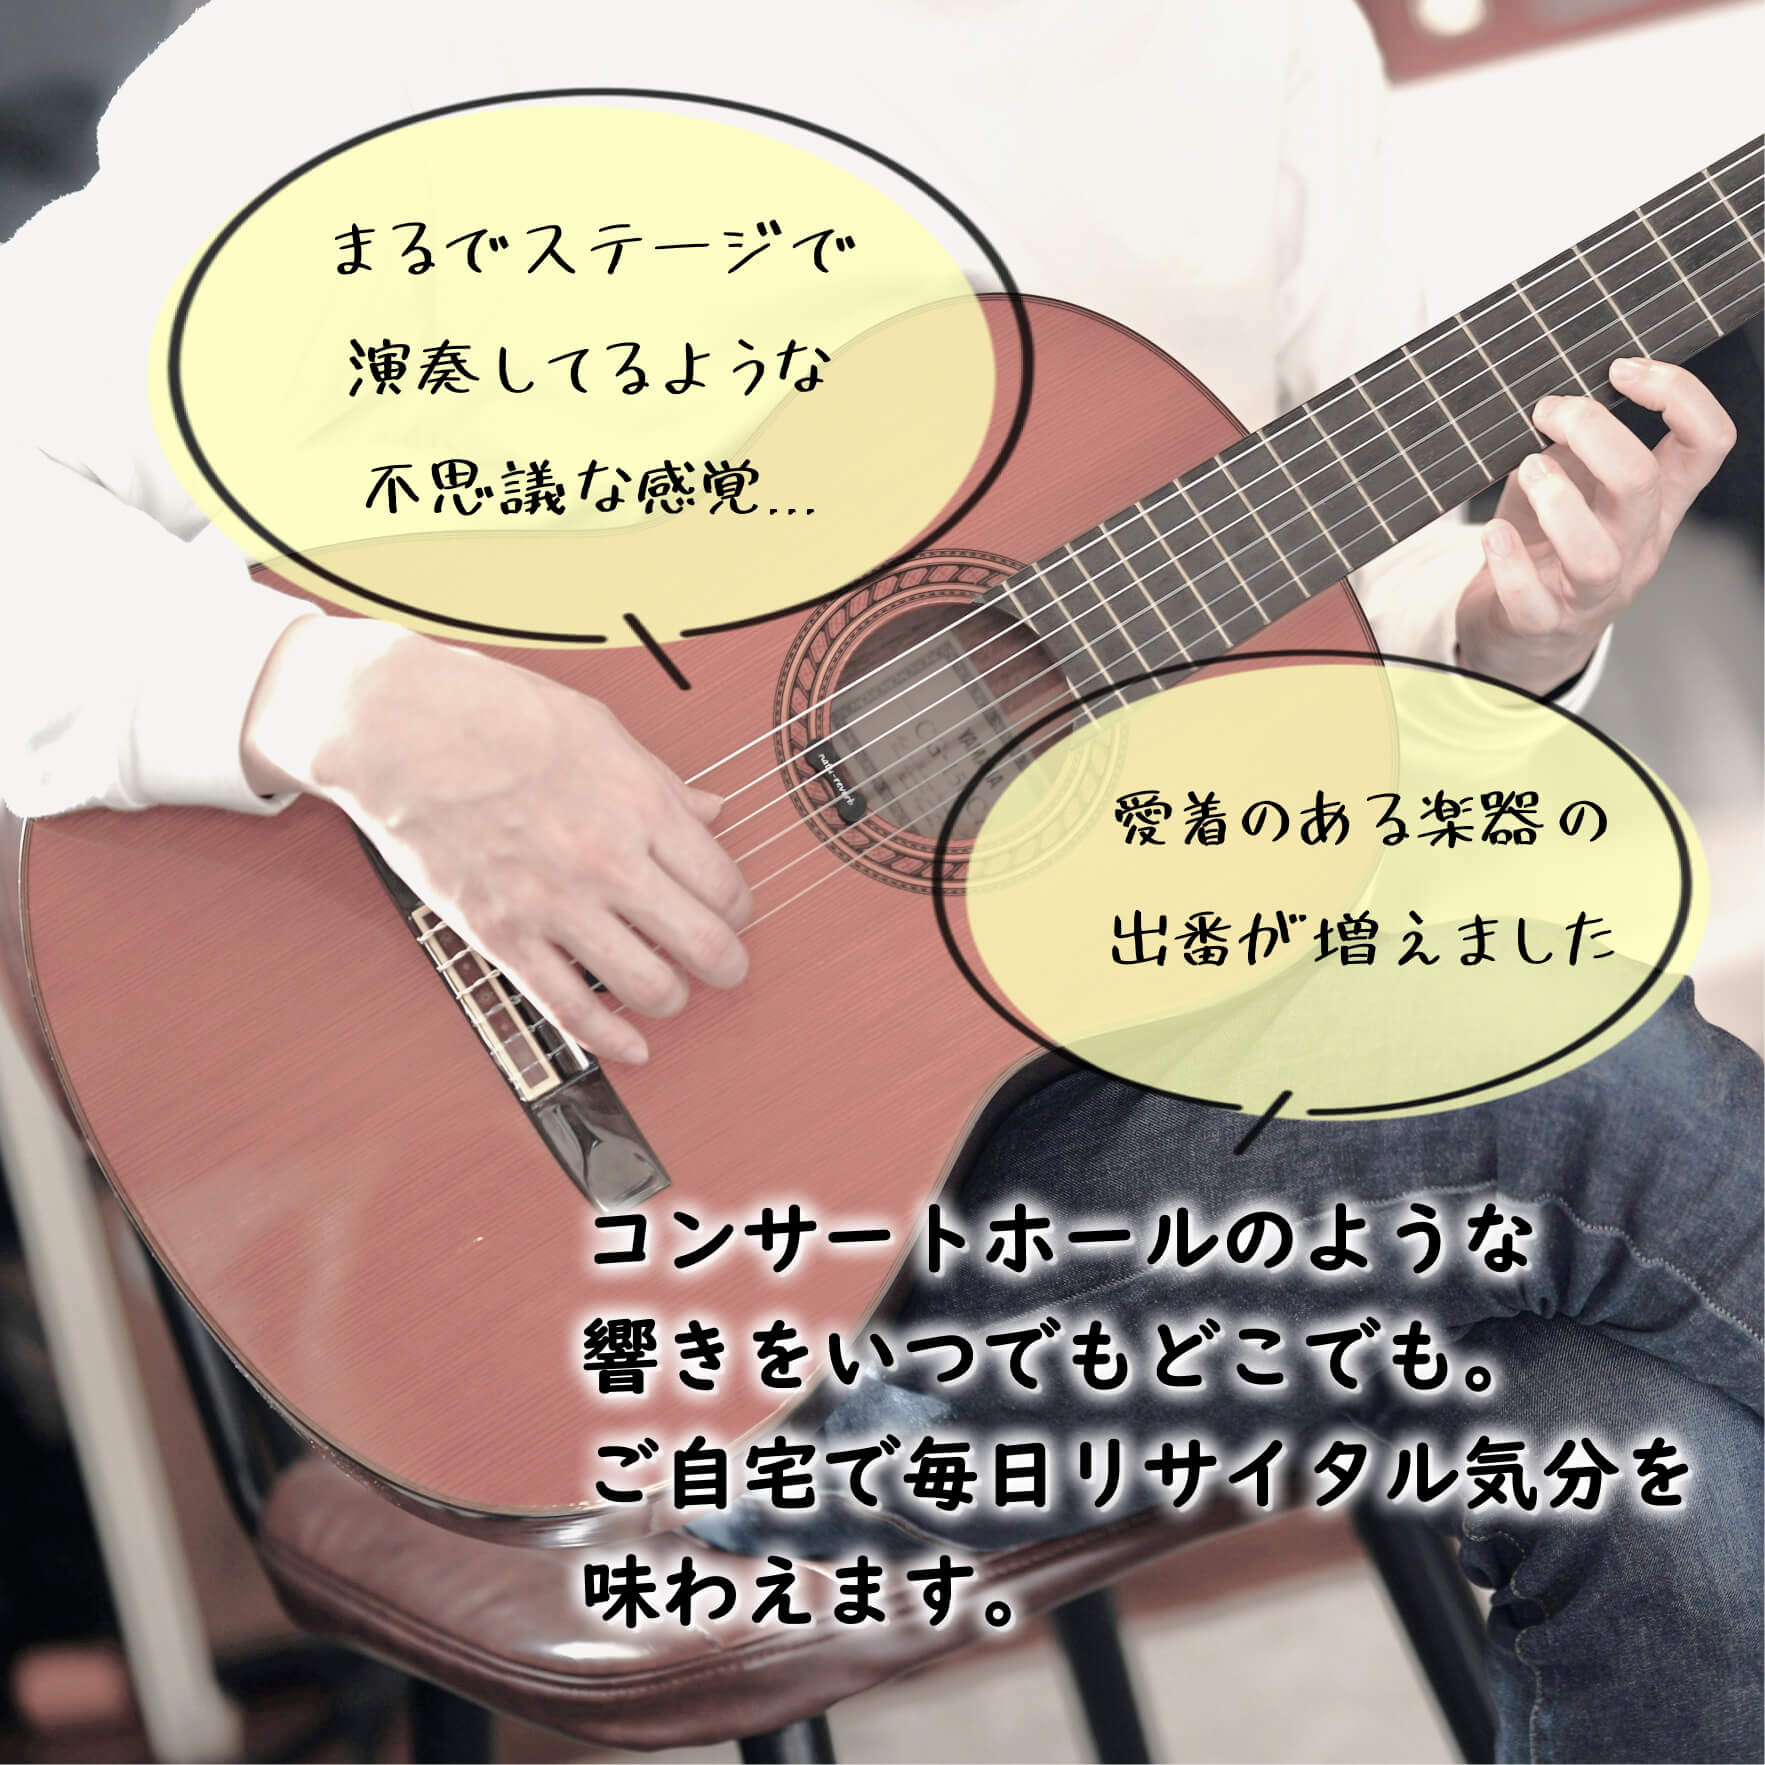 クラシック/ガットギター用 natu-reverb CG-1n